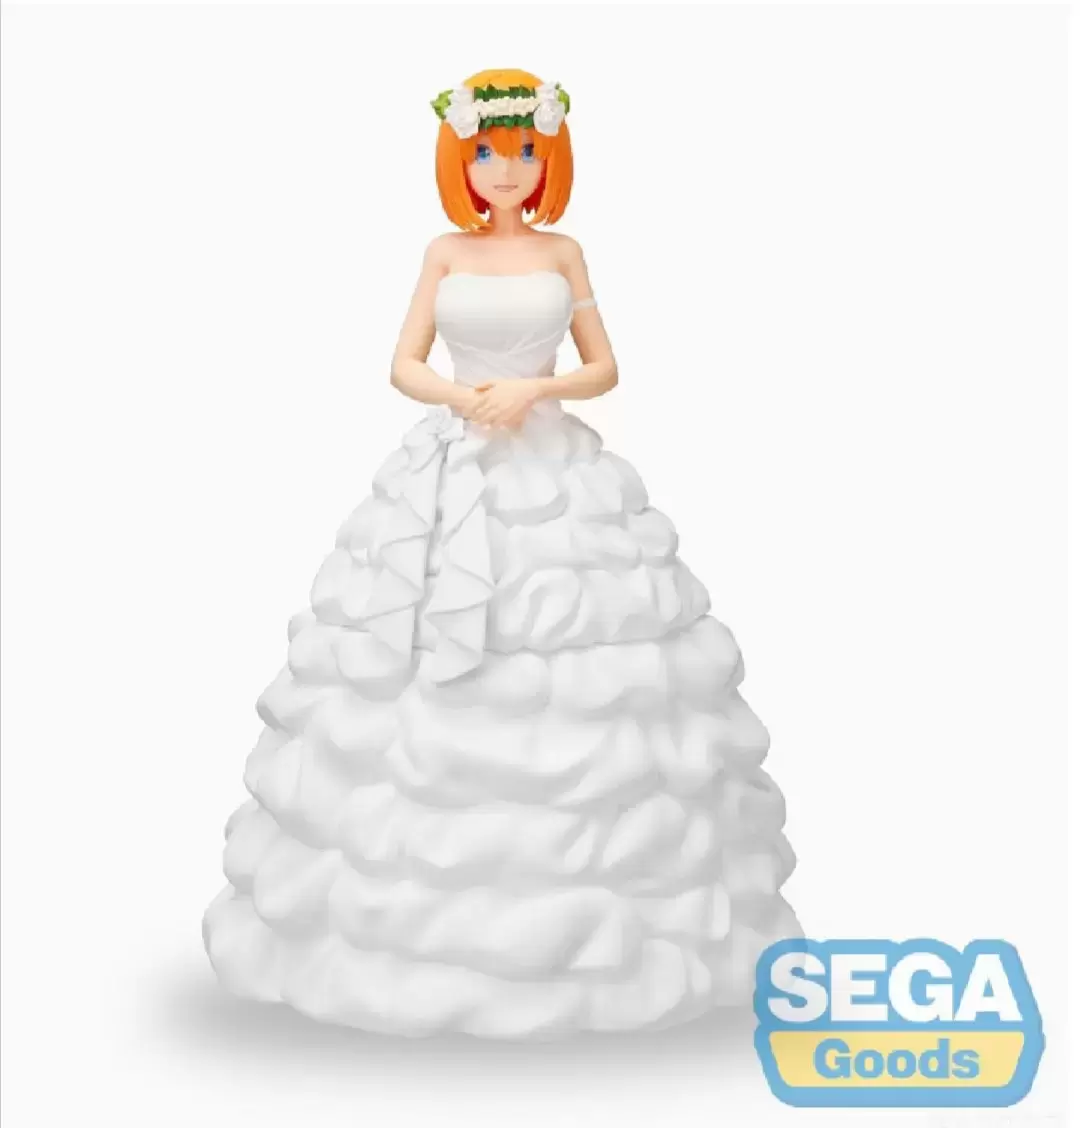 SEGA / SEGA Goods / SegaPrize - The quintessential quintuplets - Yotsuba Nakano wedding version